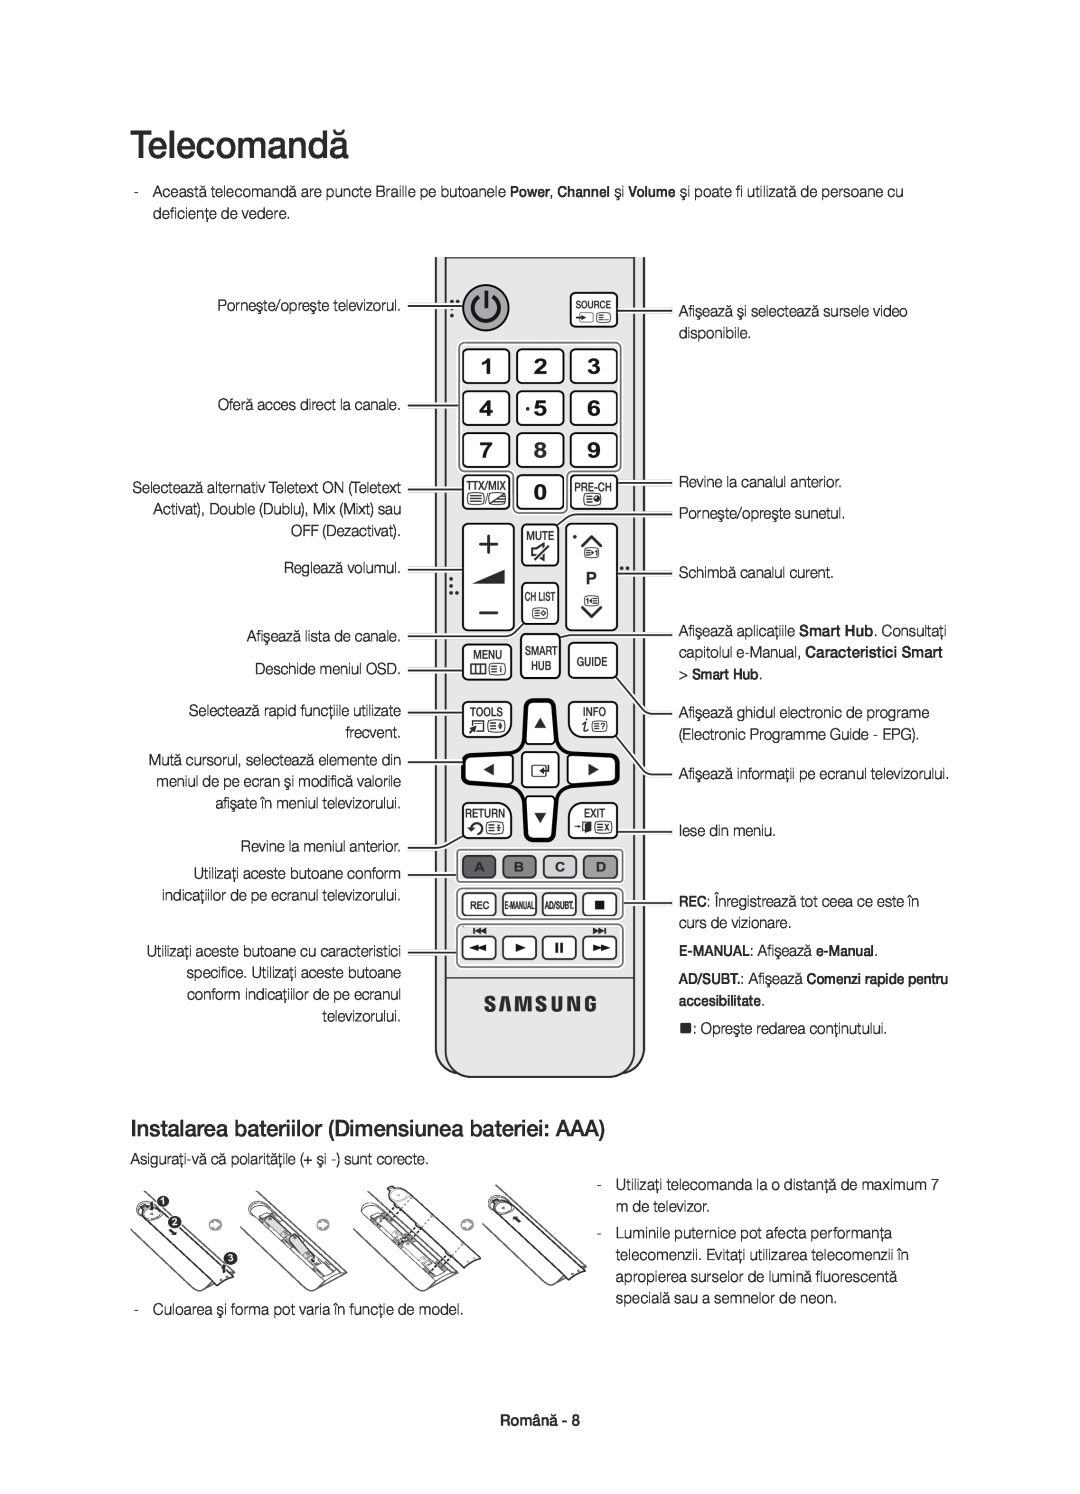 Samsung UE40H6700STXXH manual Smart Hub, conform indicaţiilor de pe ecranul televizorului, Opreşte redarea conţinutului 